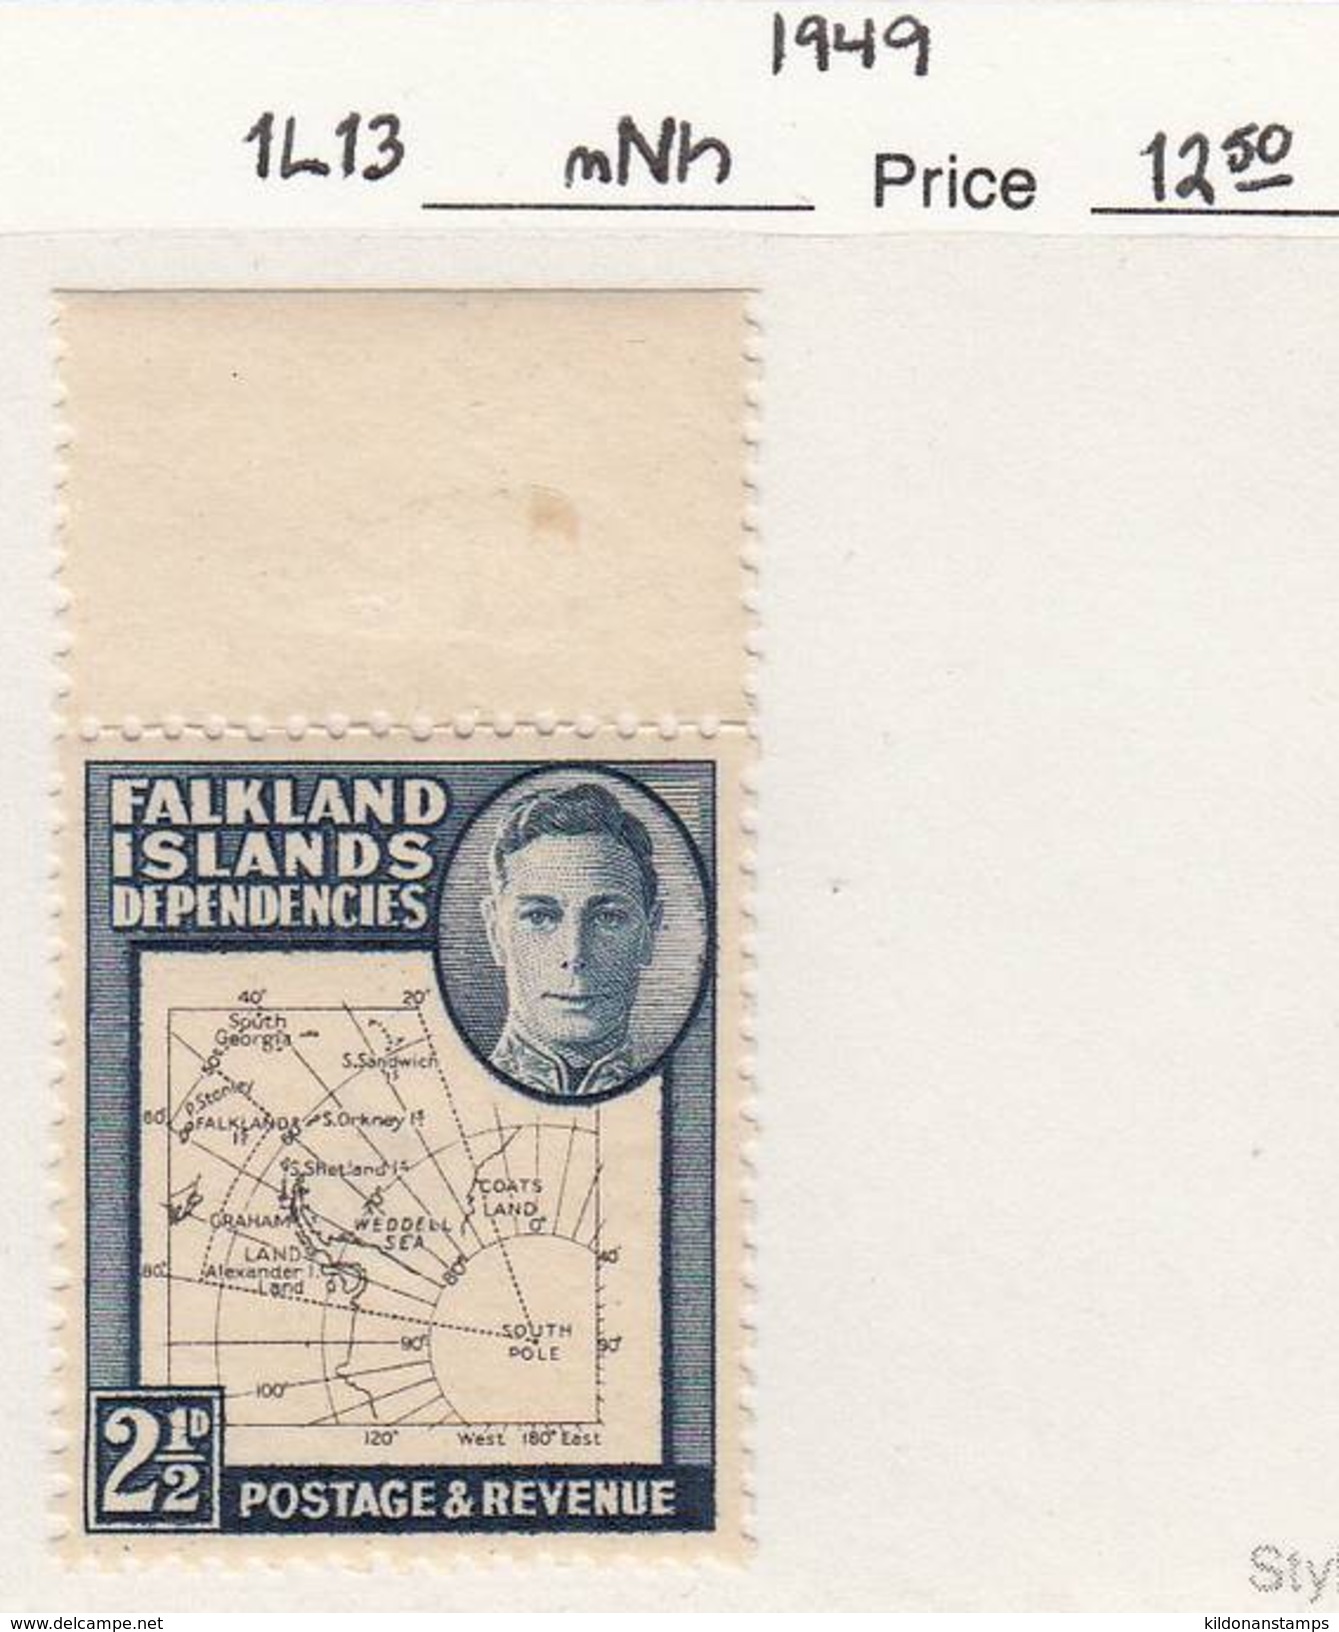 Falkland Islands Dep. 1949 Mint No Hinge, Sc# 1L13, SG G11b - Falkland Islands